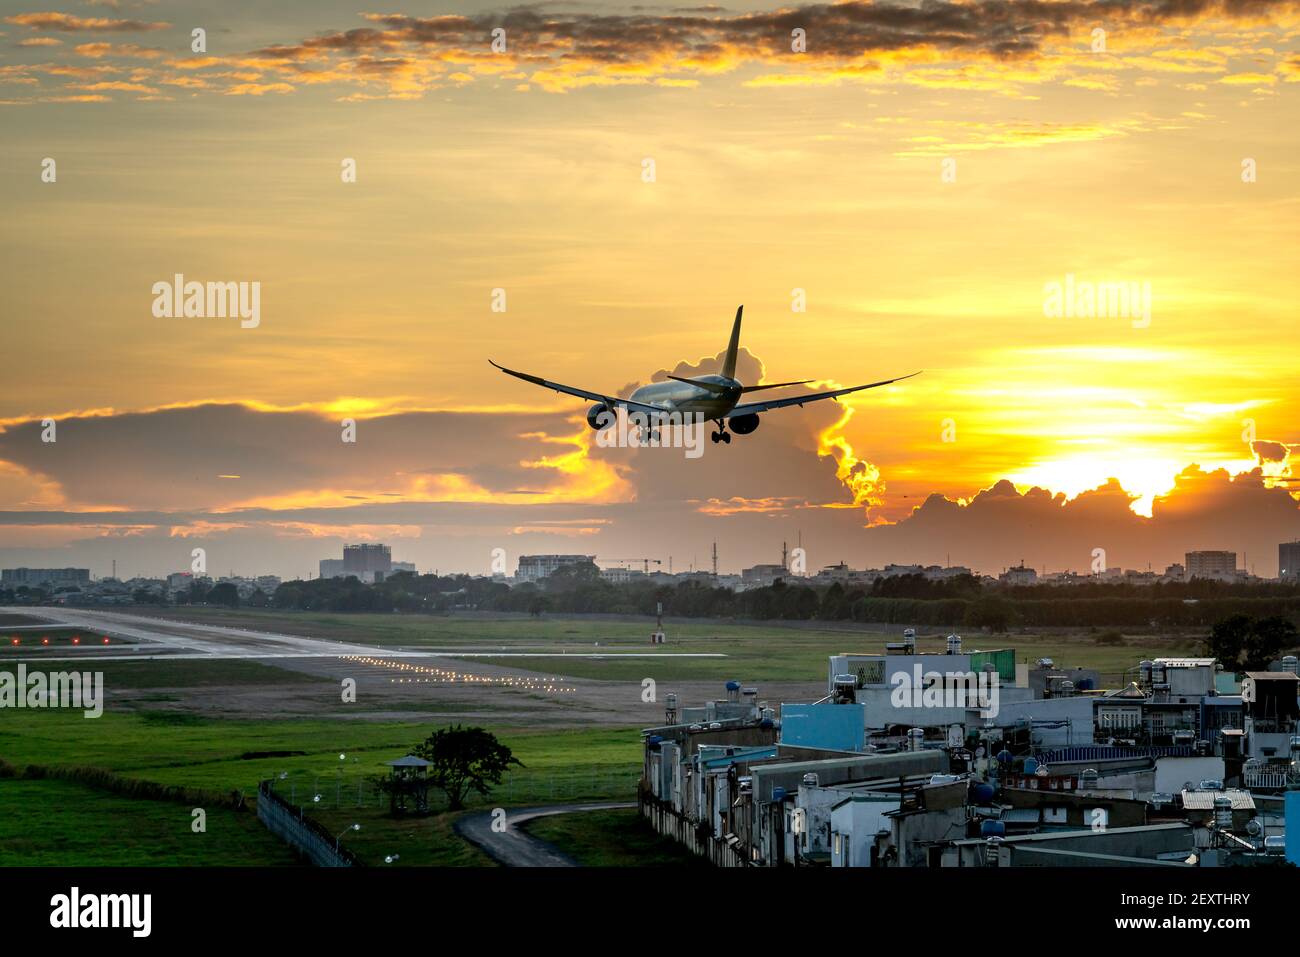 Aeroporto Tan Son Nhat, ho Chi Minh City, Vietnam - 28 febbraio 2021: L'aereo commerciale sta per atterrare all'aeroporto Tan Son Nhat nel bel pomeriggio Foto Stock